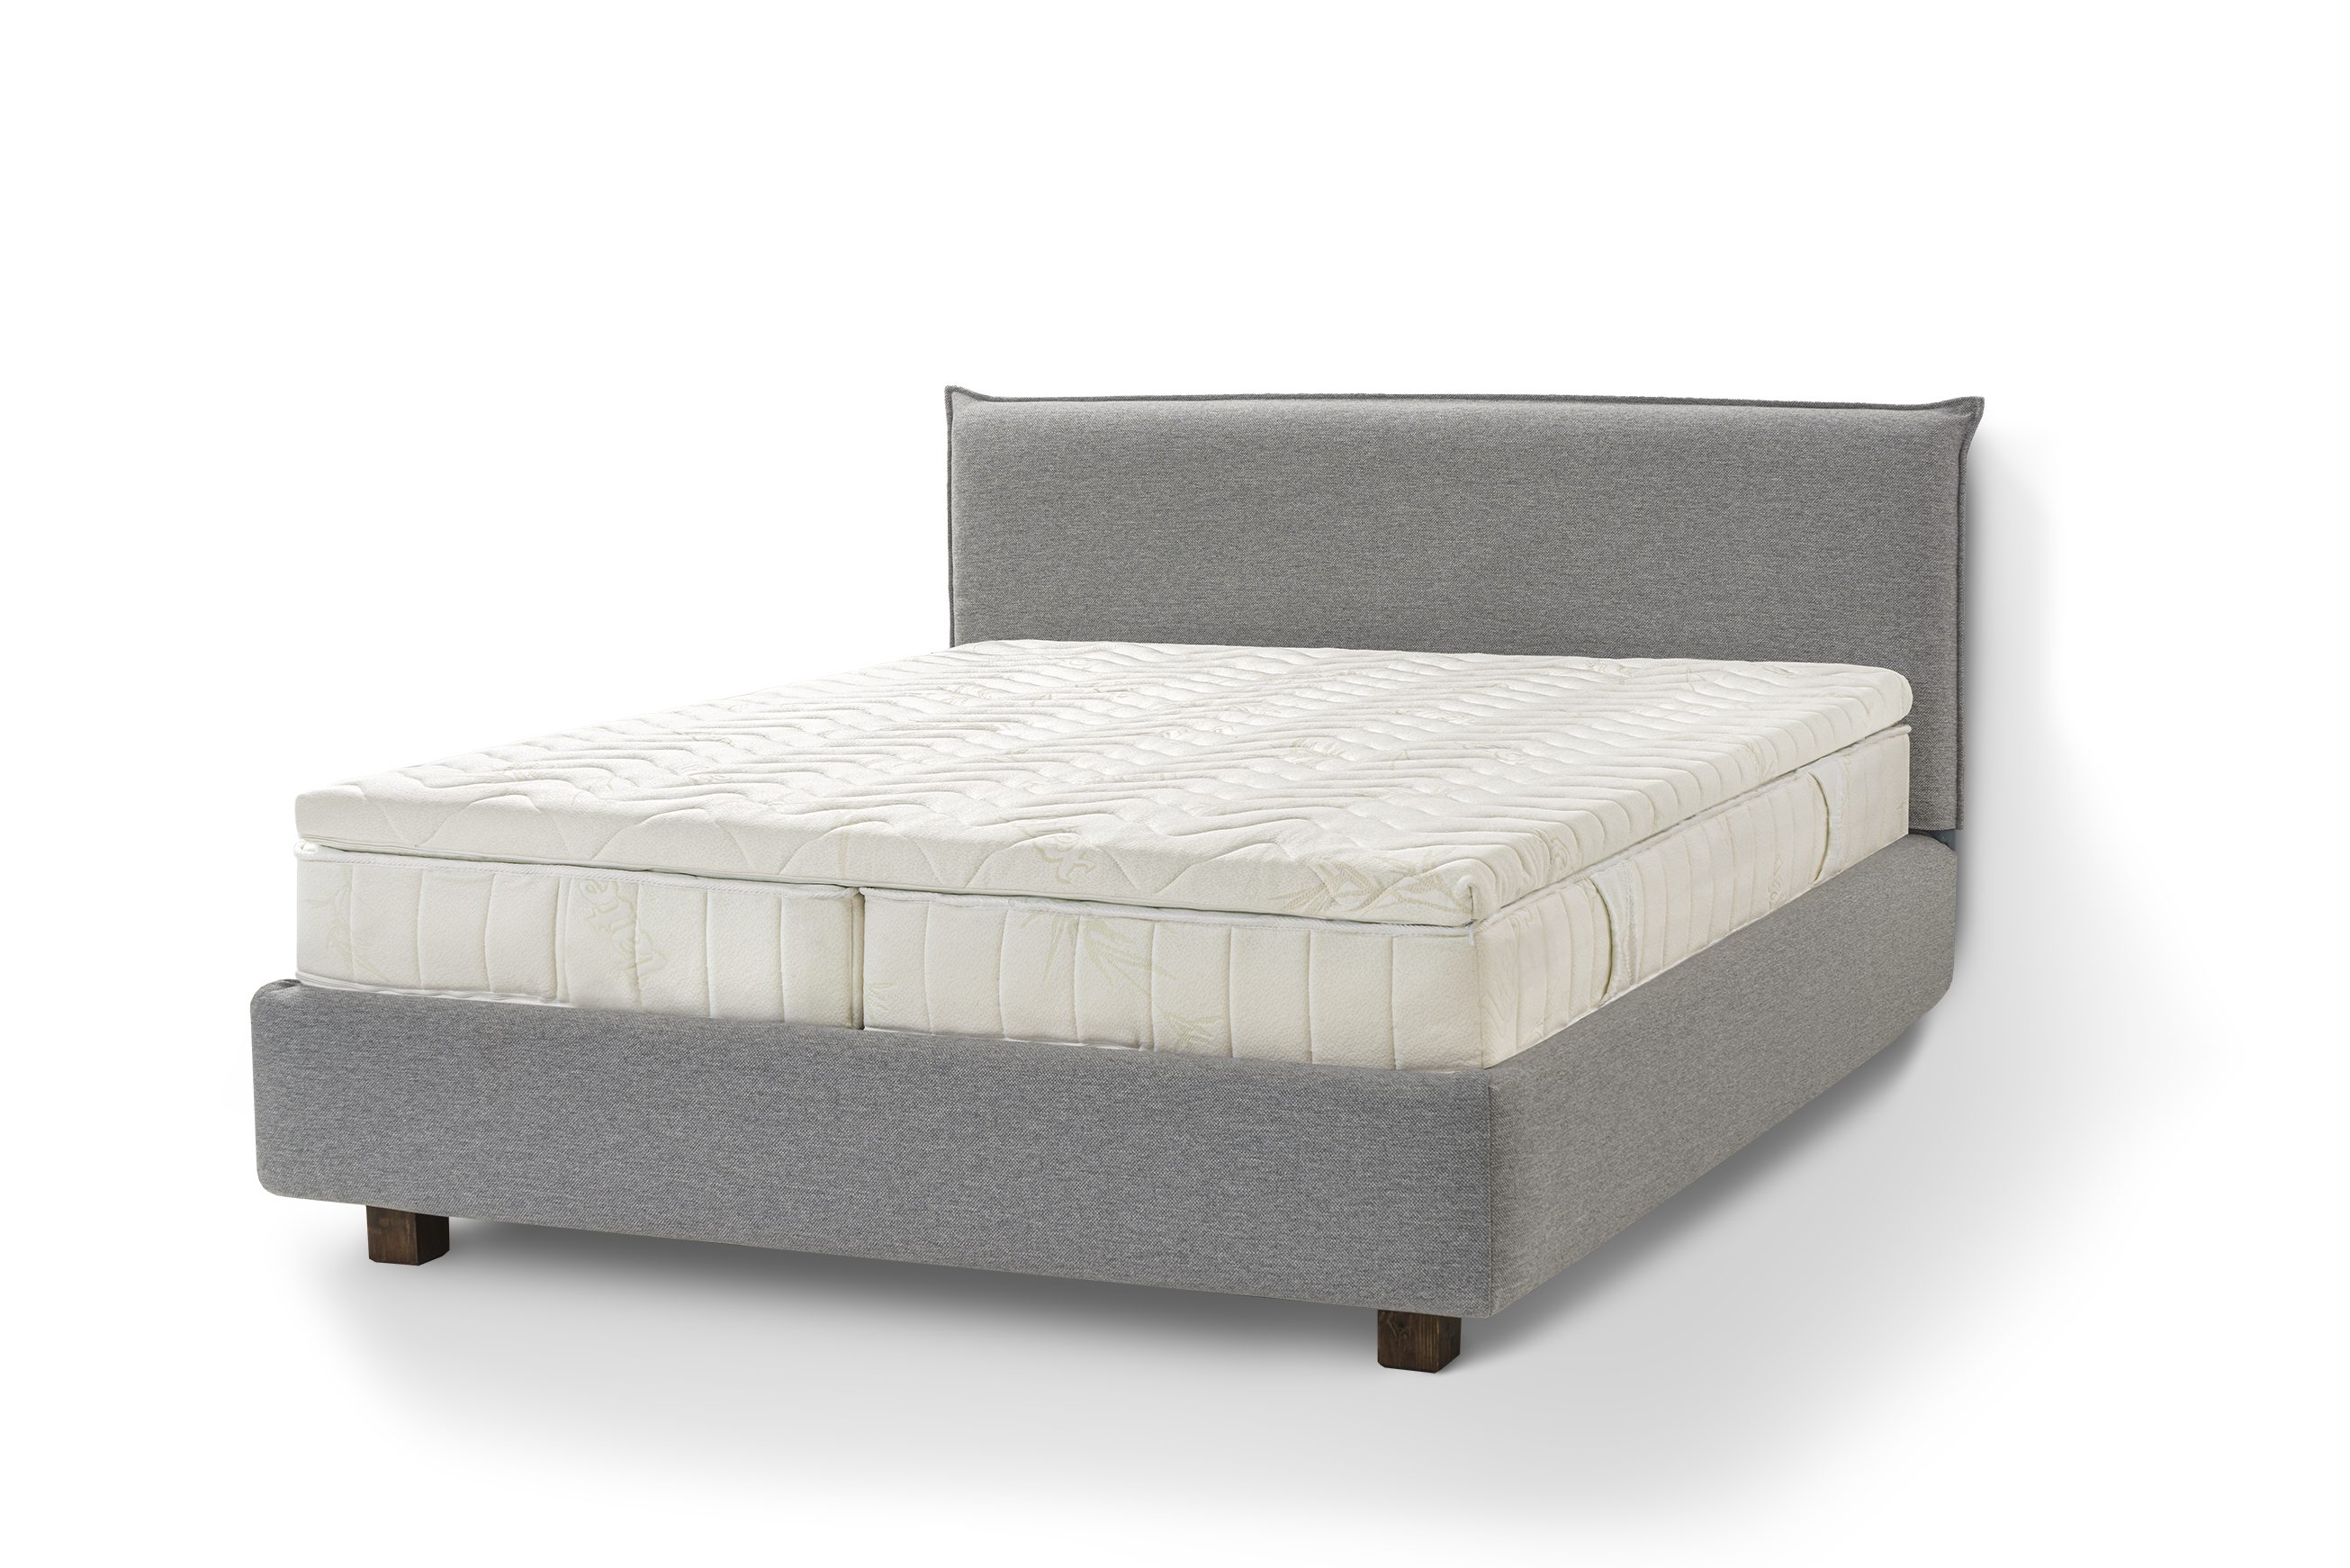 Bett hochwertigem Puro, aus Moderni Siena Gray Letti Massivholz Holzbett hergestellt